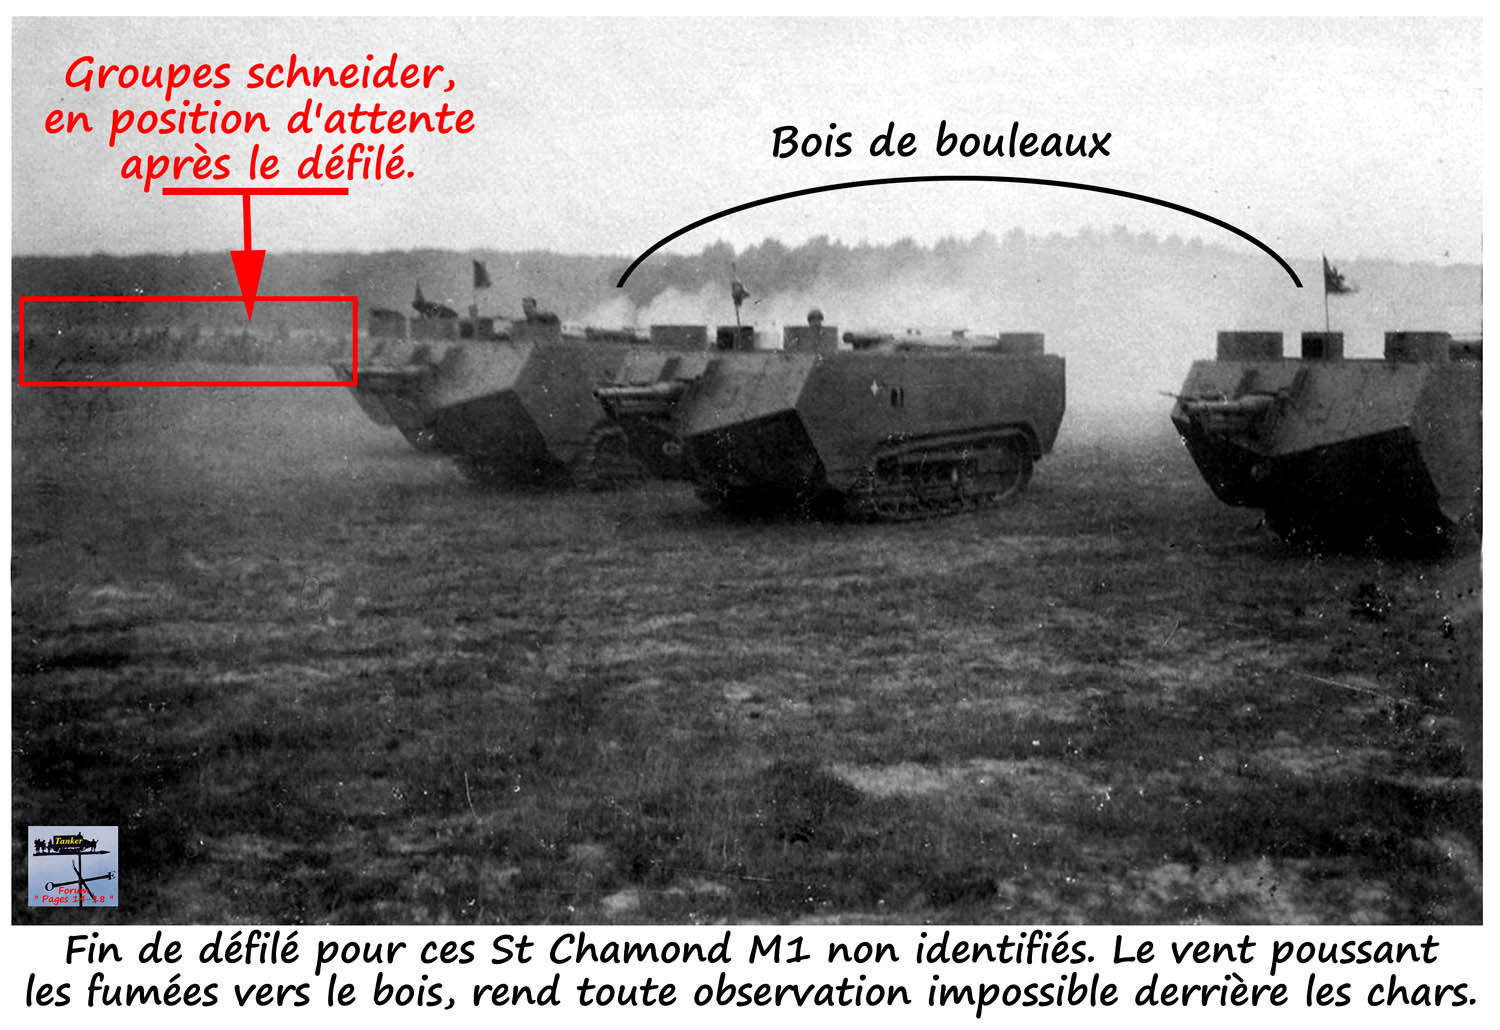 17 - Grpt X - AS 31 - St Chamond M1 Asxxx n° 62xxx - 17a.jpg